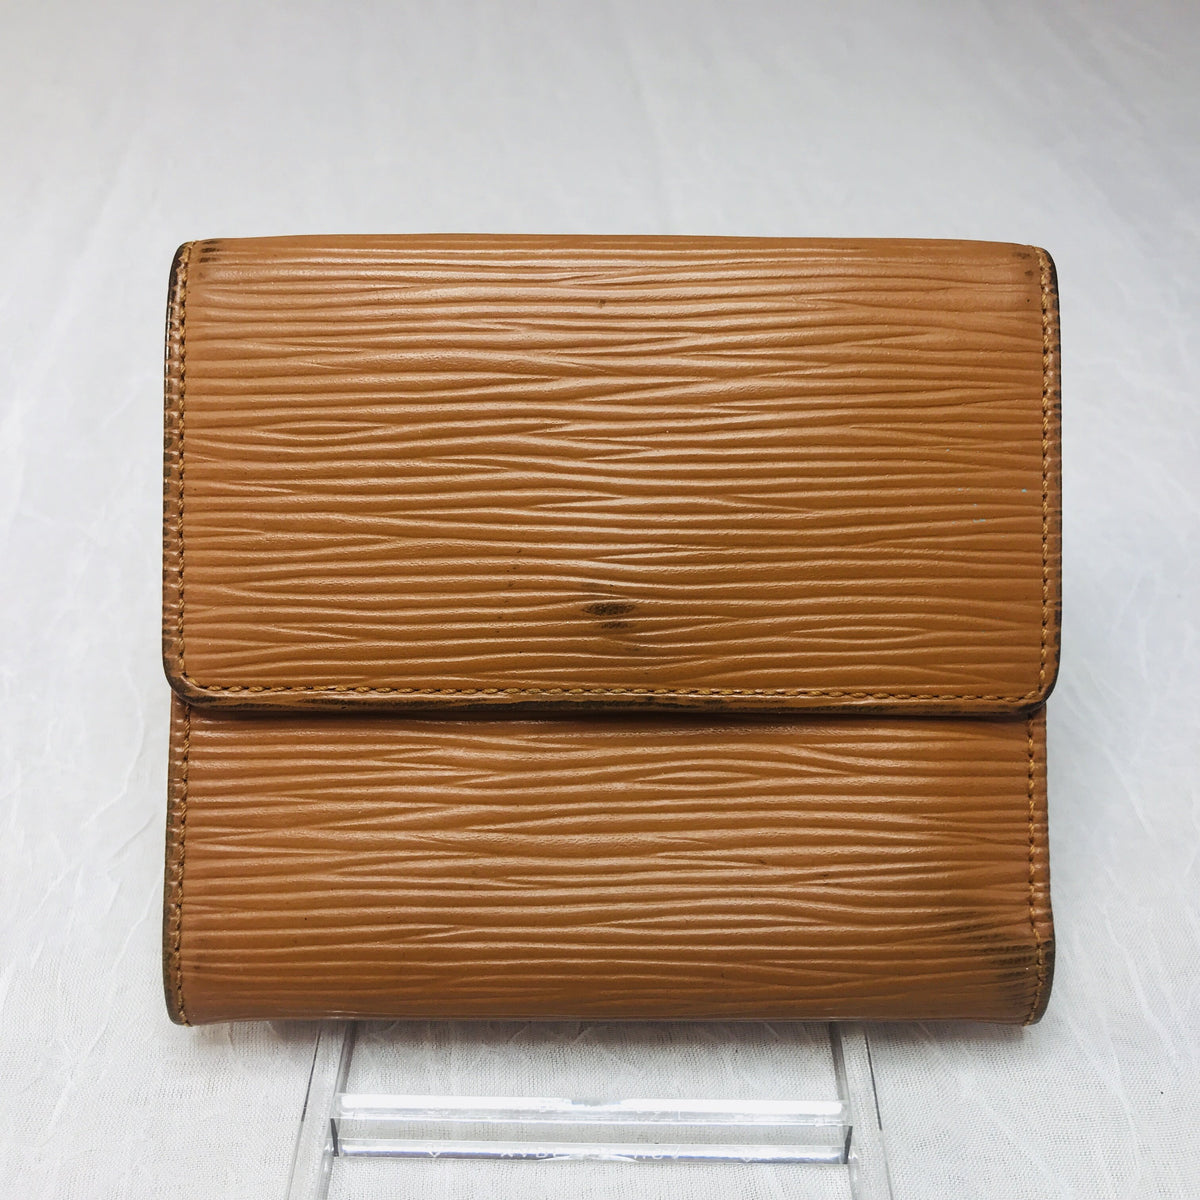 Louis Vuitton Epi Leather Bifold Wallet – Just Gorgeous Studio